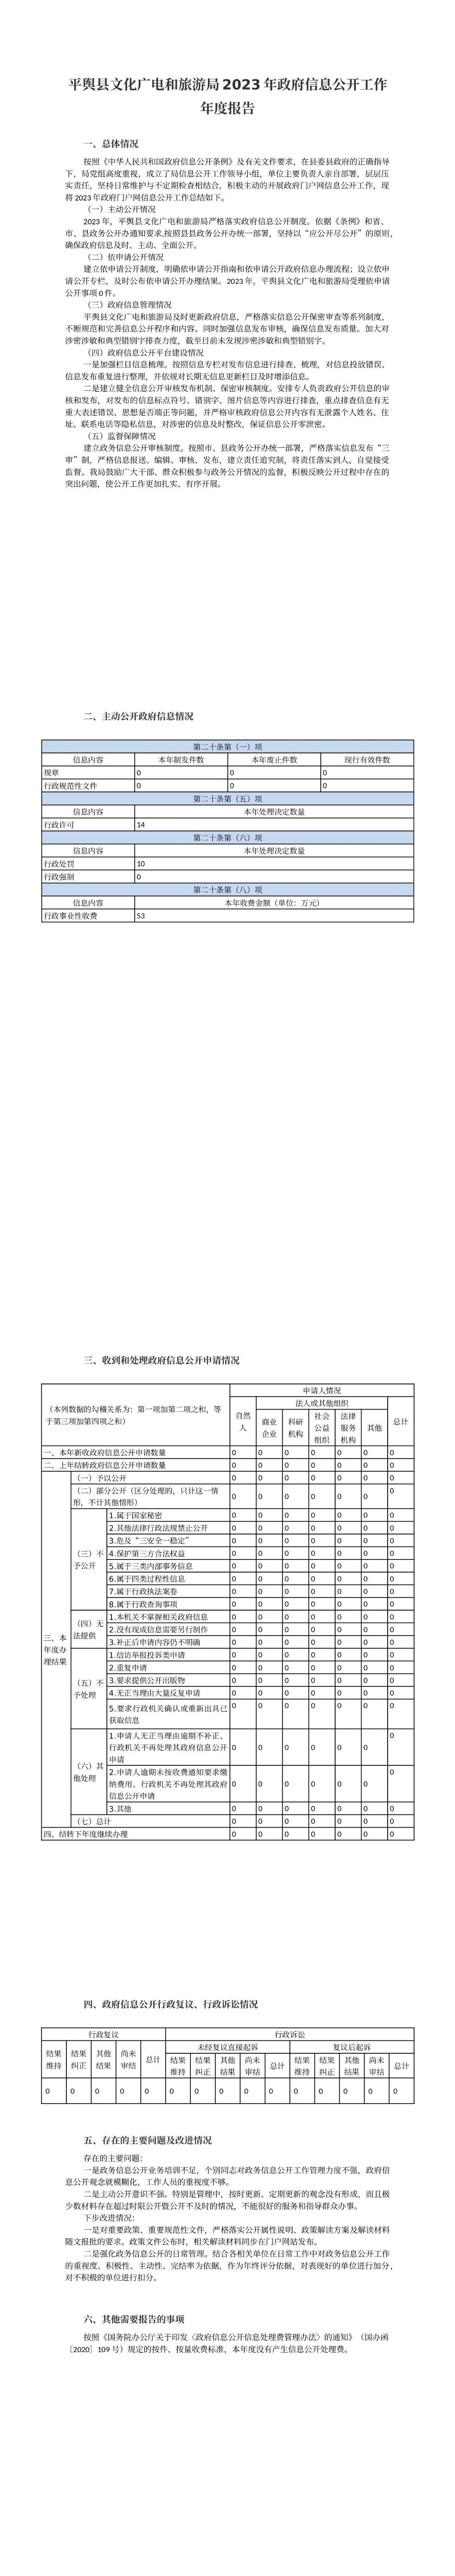 平舆县文化广电和旅游局2023年政府信息公开工作年度报告_00.jpg